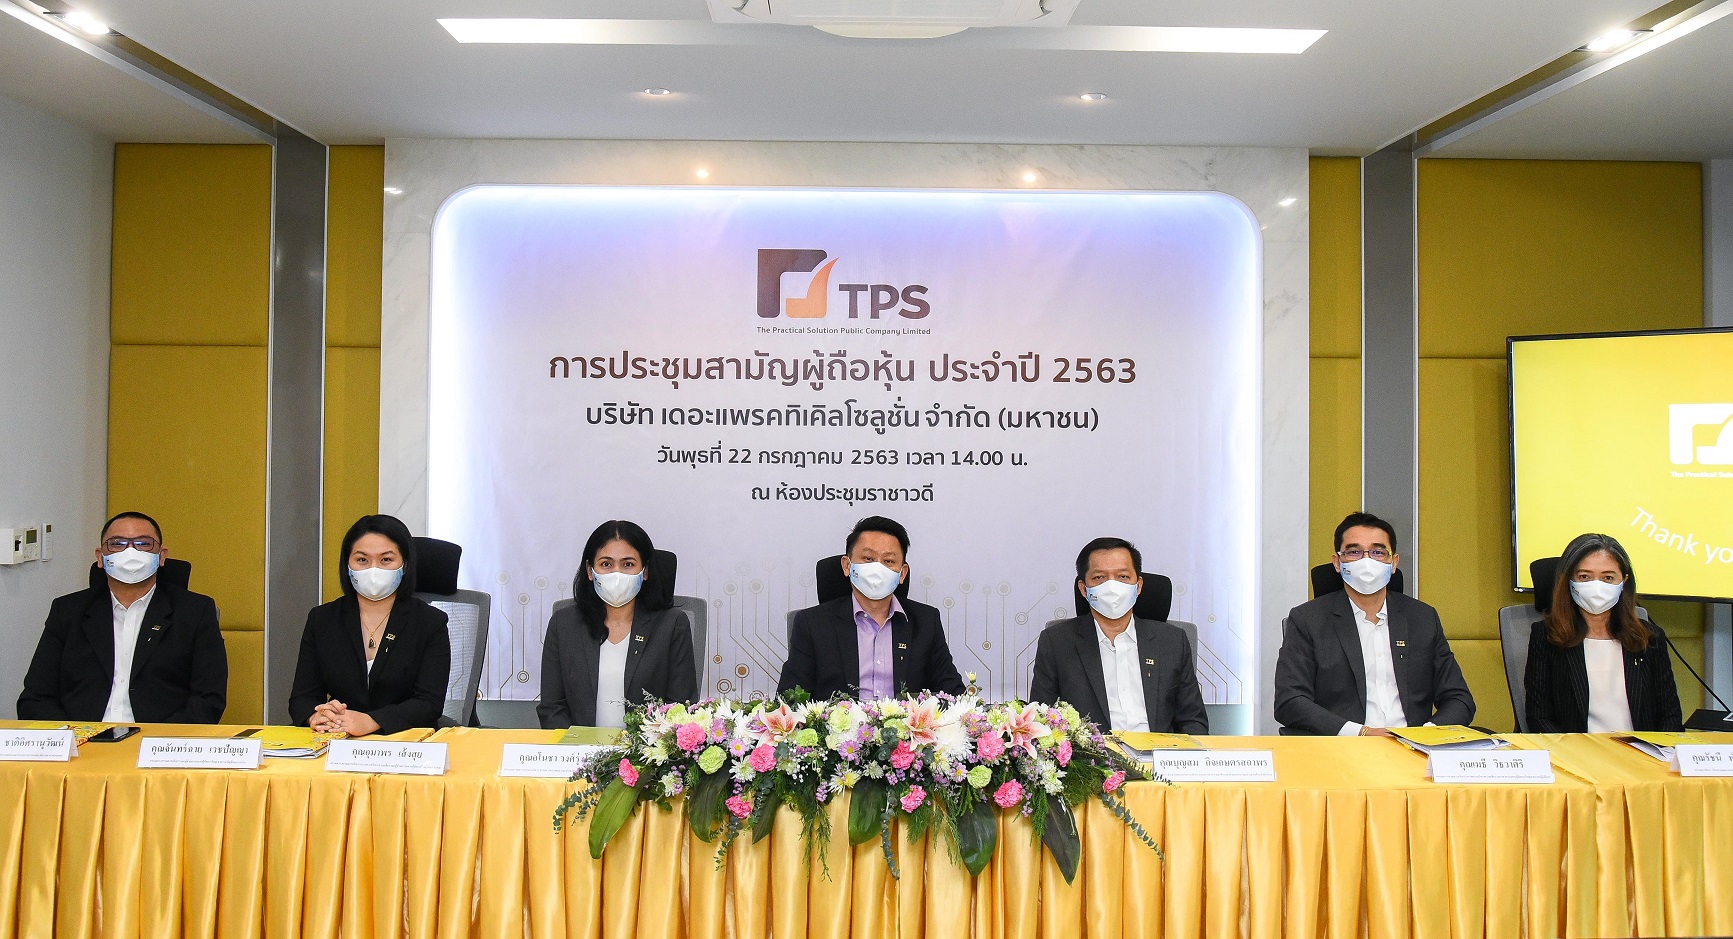 ภาพข่าว: TPS จัดประชุมสามัญผู้ถือหุ้น ประจำปี 2563